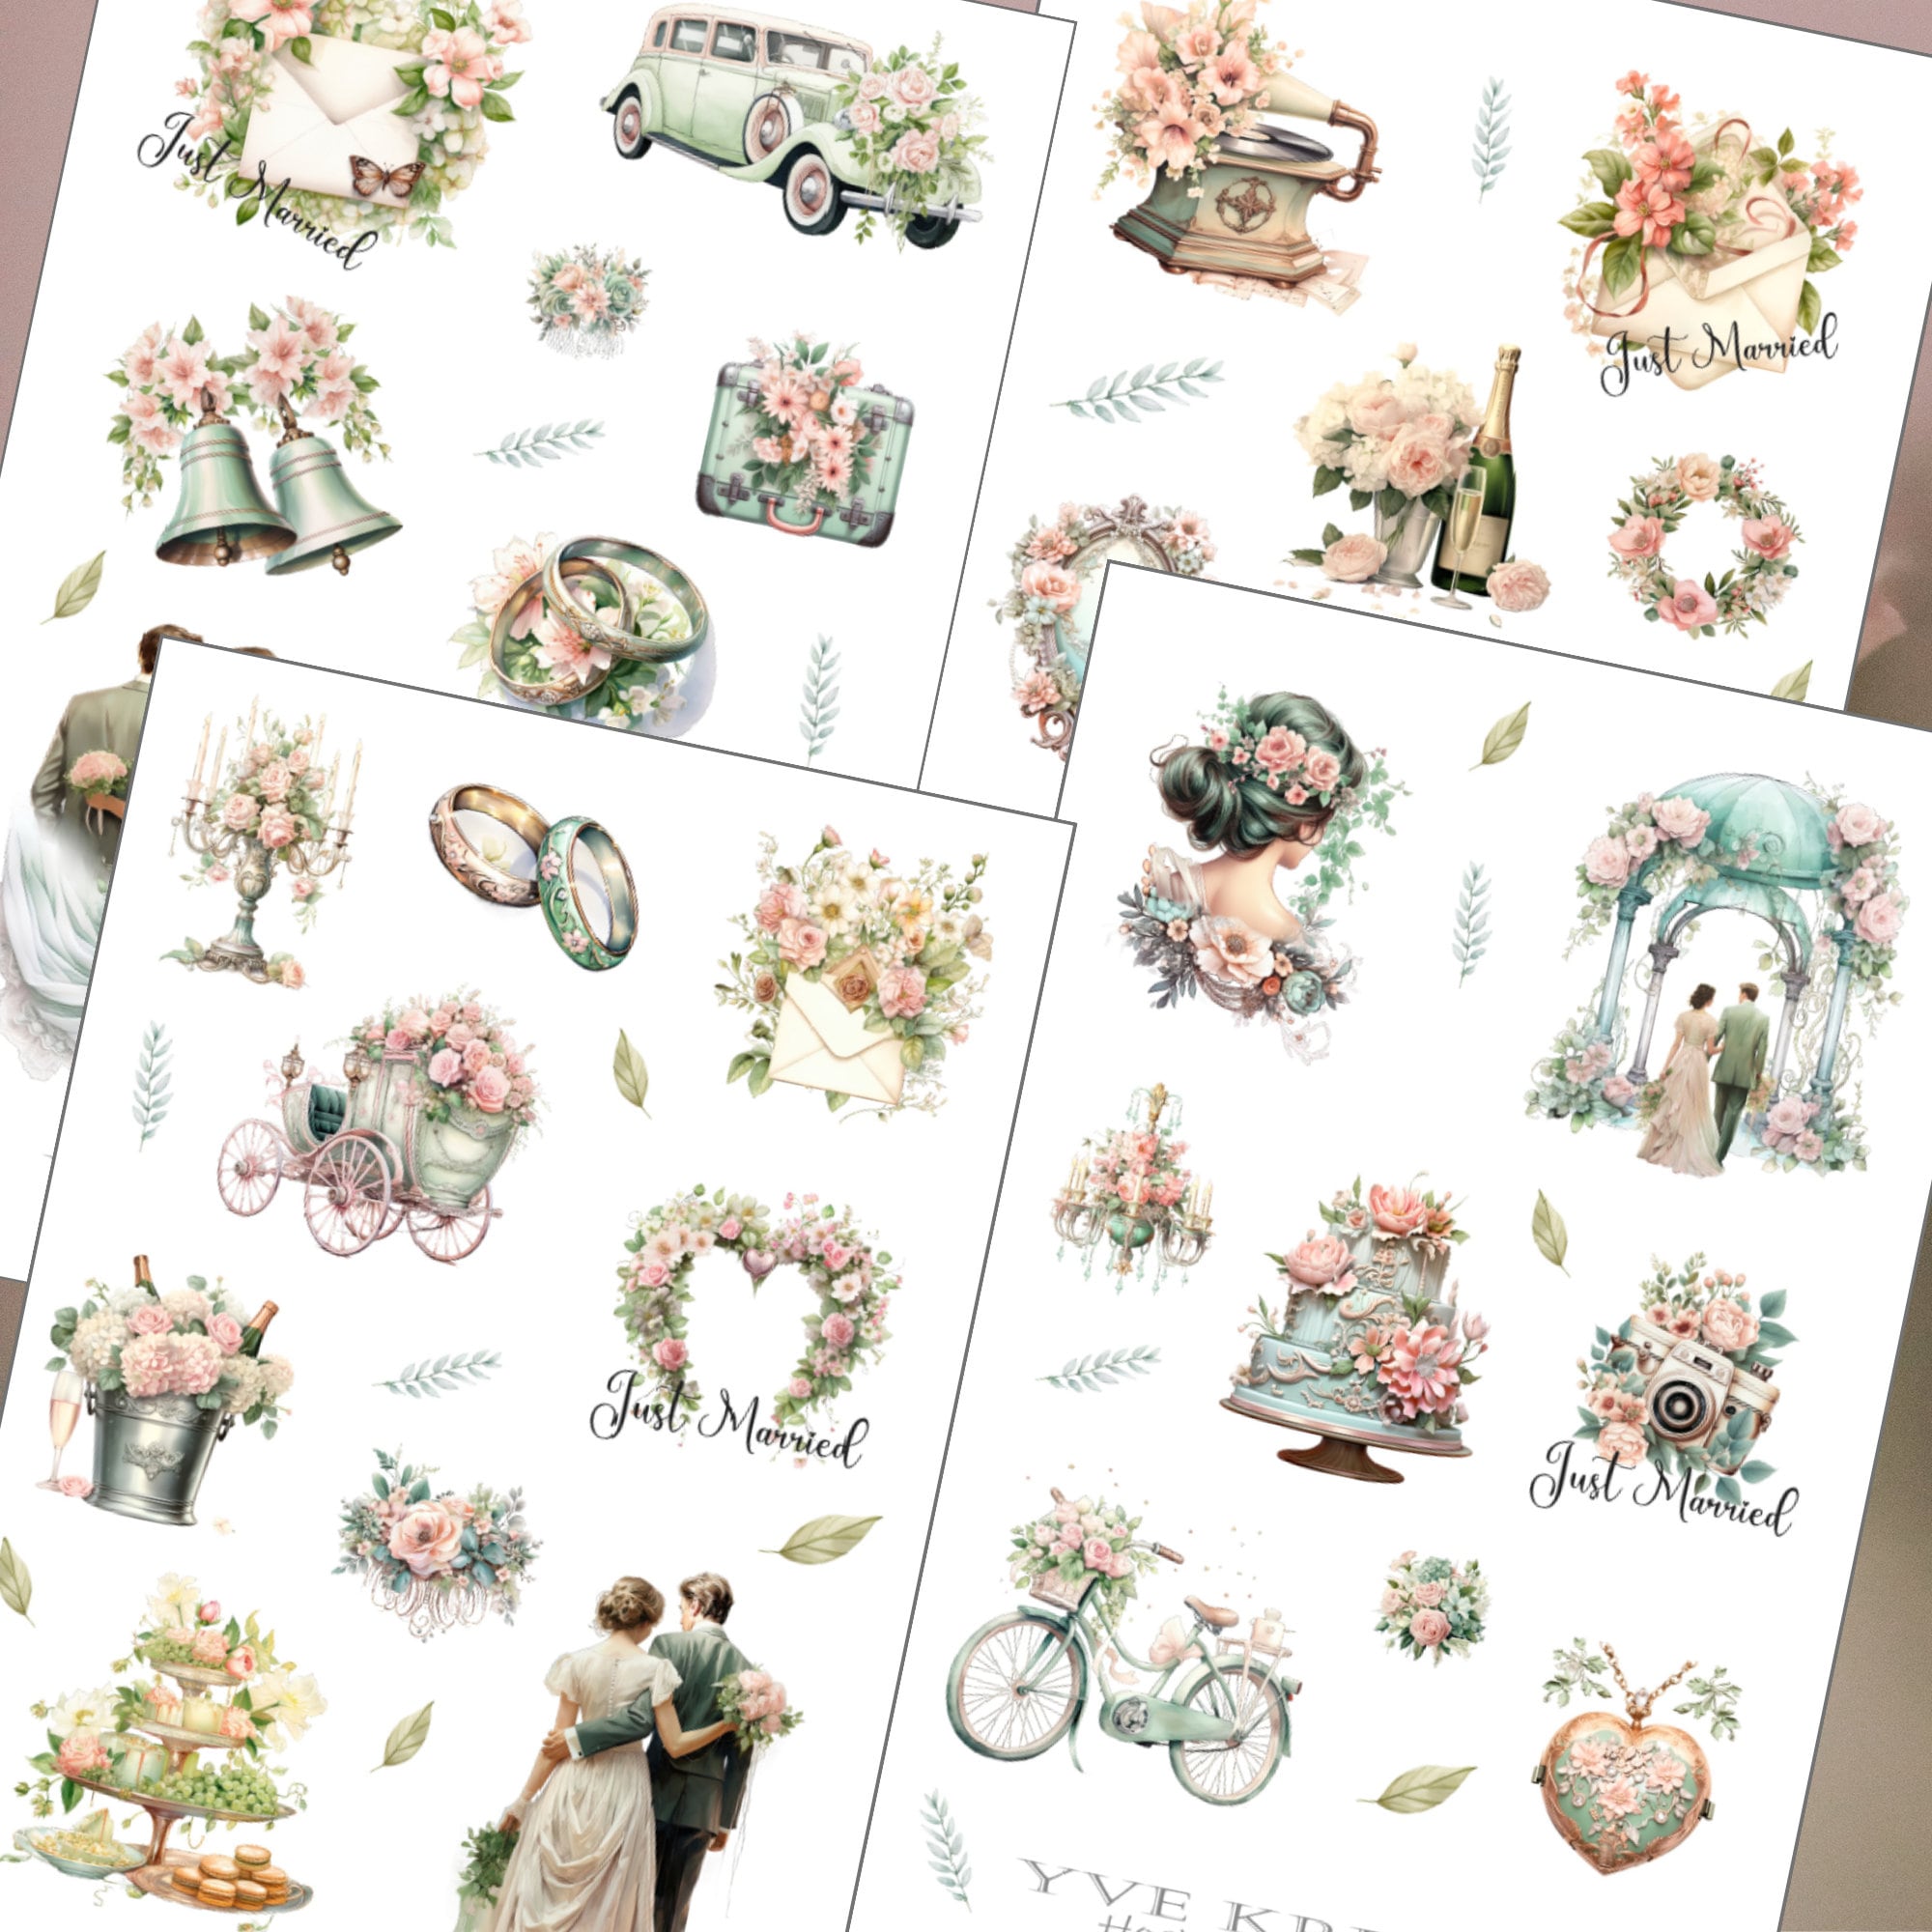 Sticker Bogen - Hochzeit Braut | Sticker Set - Journal Sticker - Aufkleber 4 Bögen zur Auswahl in Weiß oder Transparent